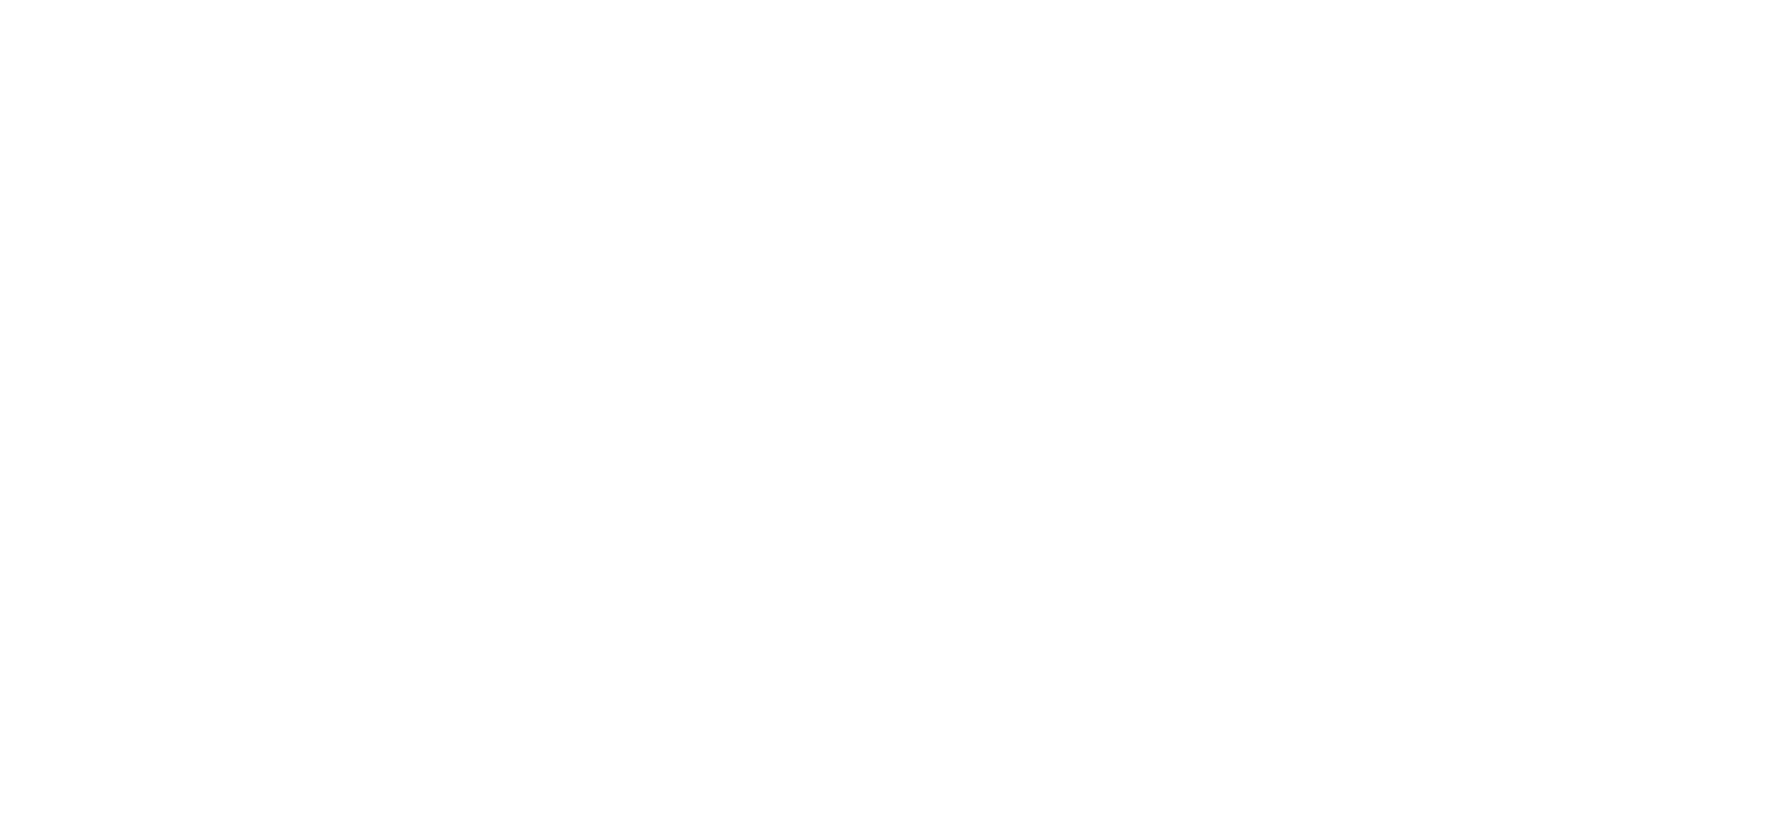 Logo de Baak.